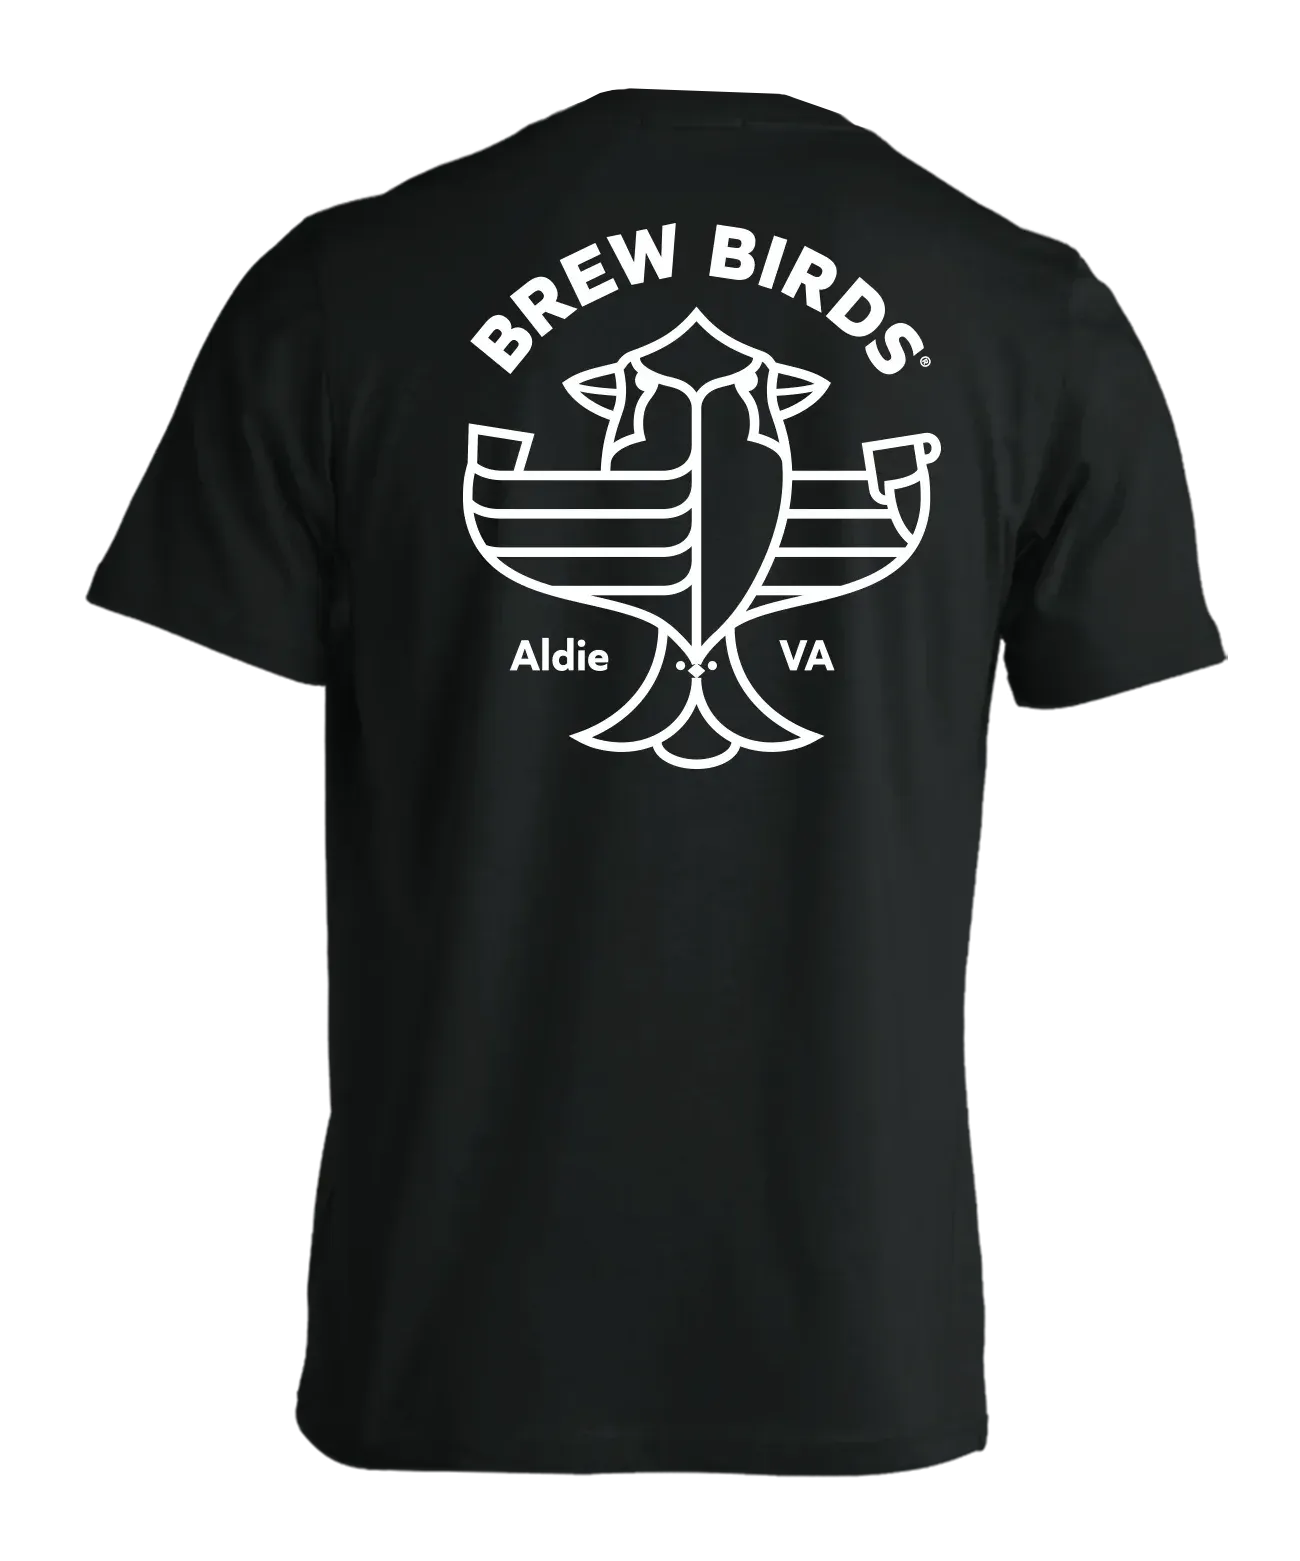 Work Ethic Design LL Brew Birds